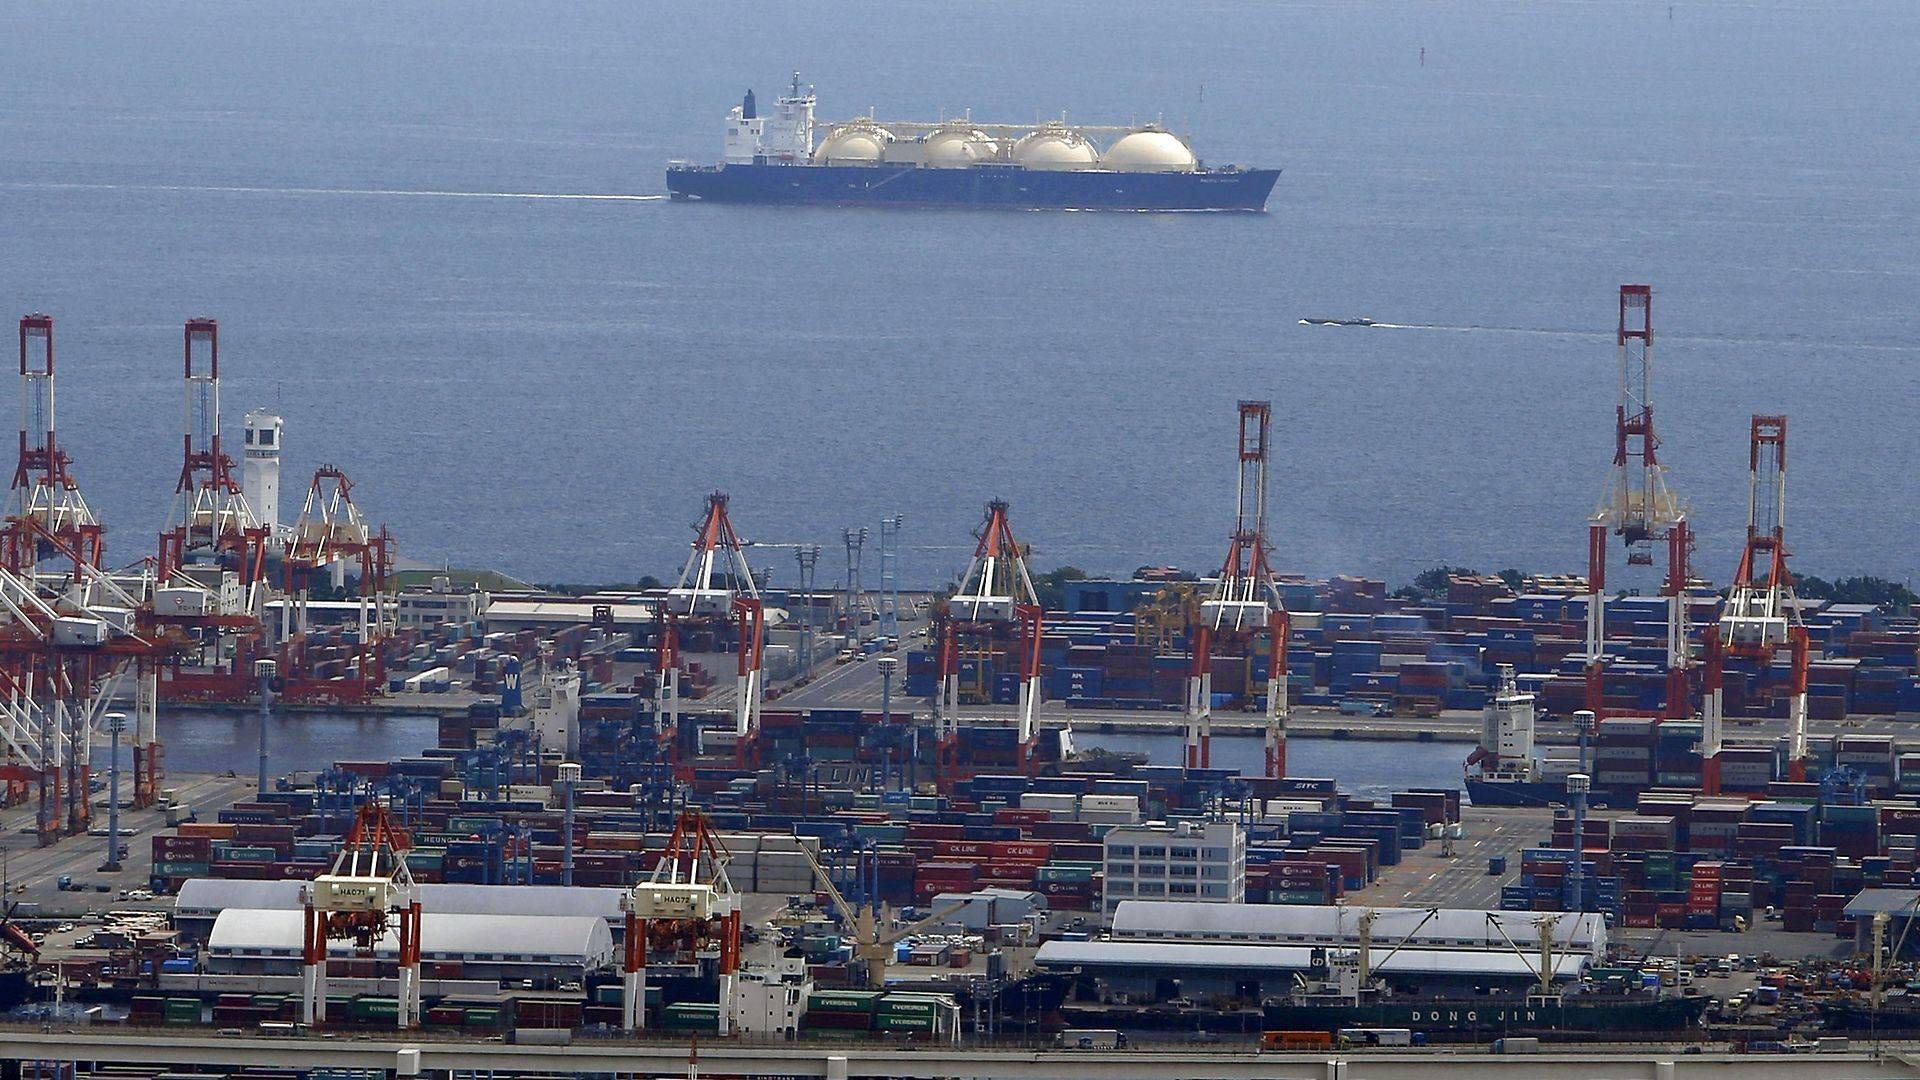 MOL-topchef ser ingen vej uden om at fortsætte importen af russisk gas. Her i havnen i den japanske by Yokohama. | Foto: Mitsui OSK Lines